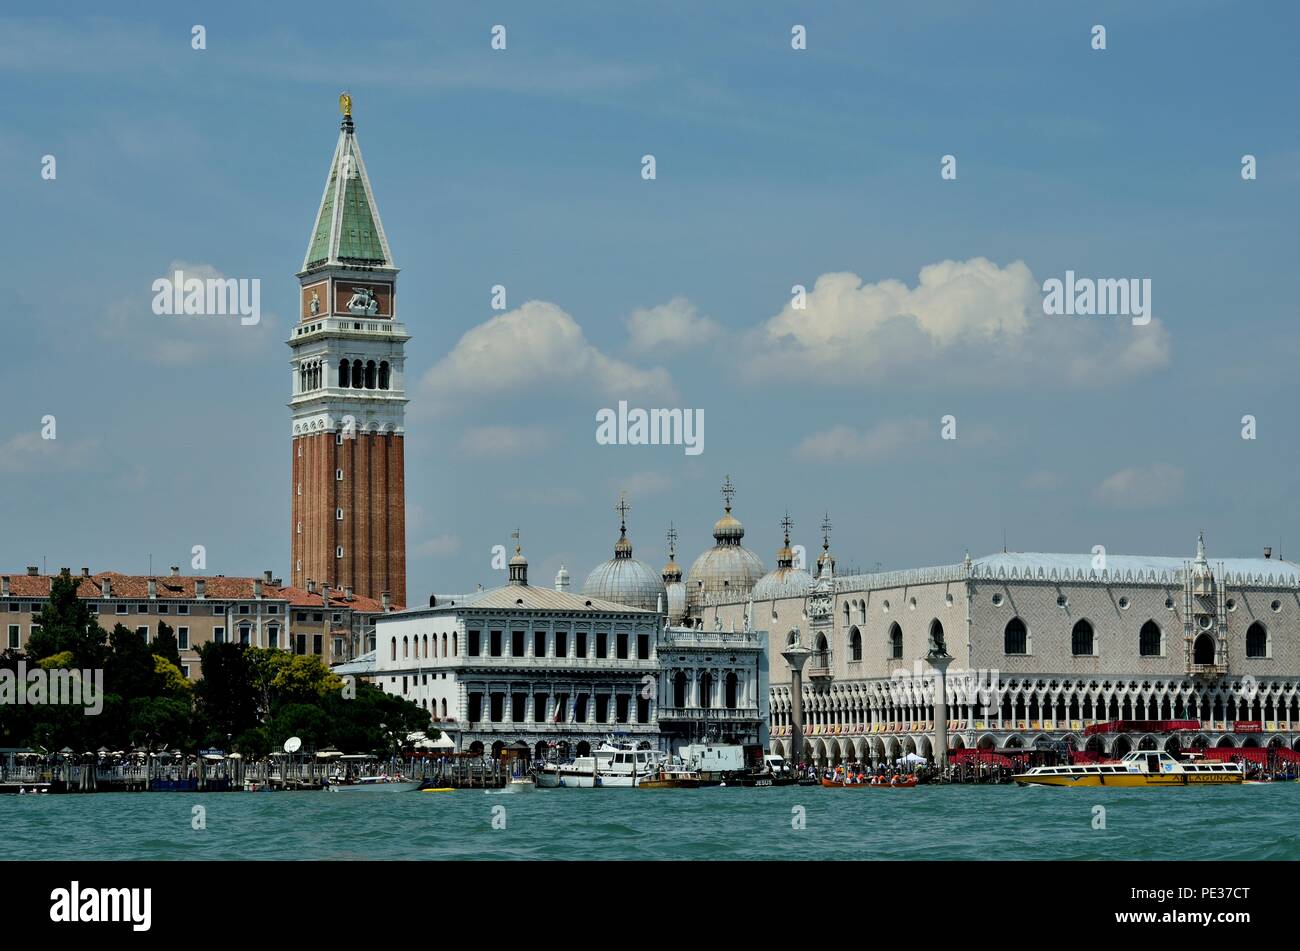 Viele Touristen genießen die Sehenswürdigkeiten am Dogenpalast auf der rechten Seite und dem Campanile Turm auf der linken Seite am Markusplatz, Venedig, Italien, Europa Stockfoto